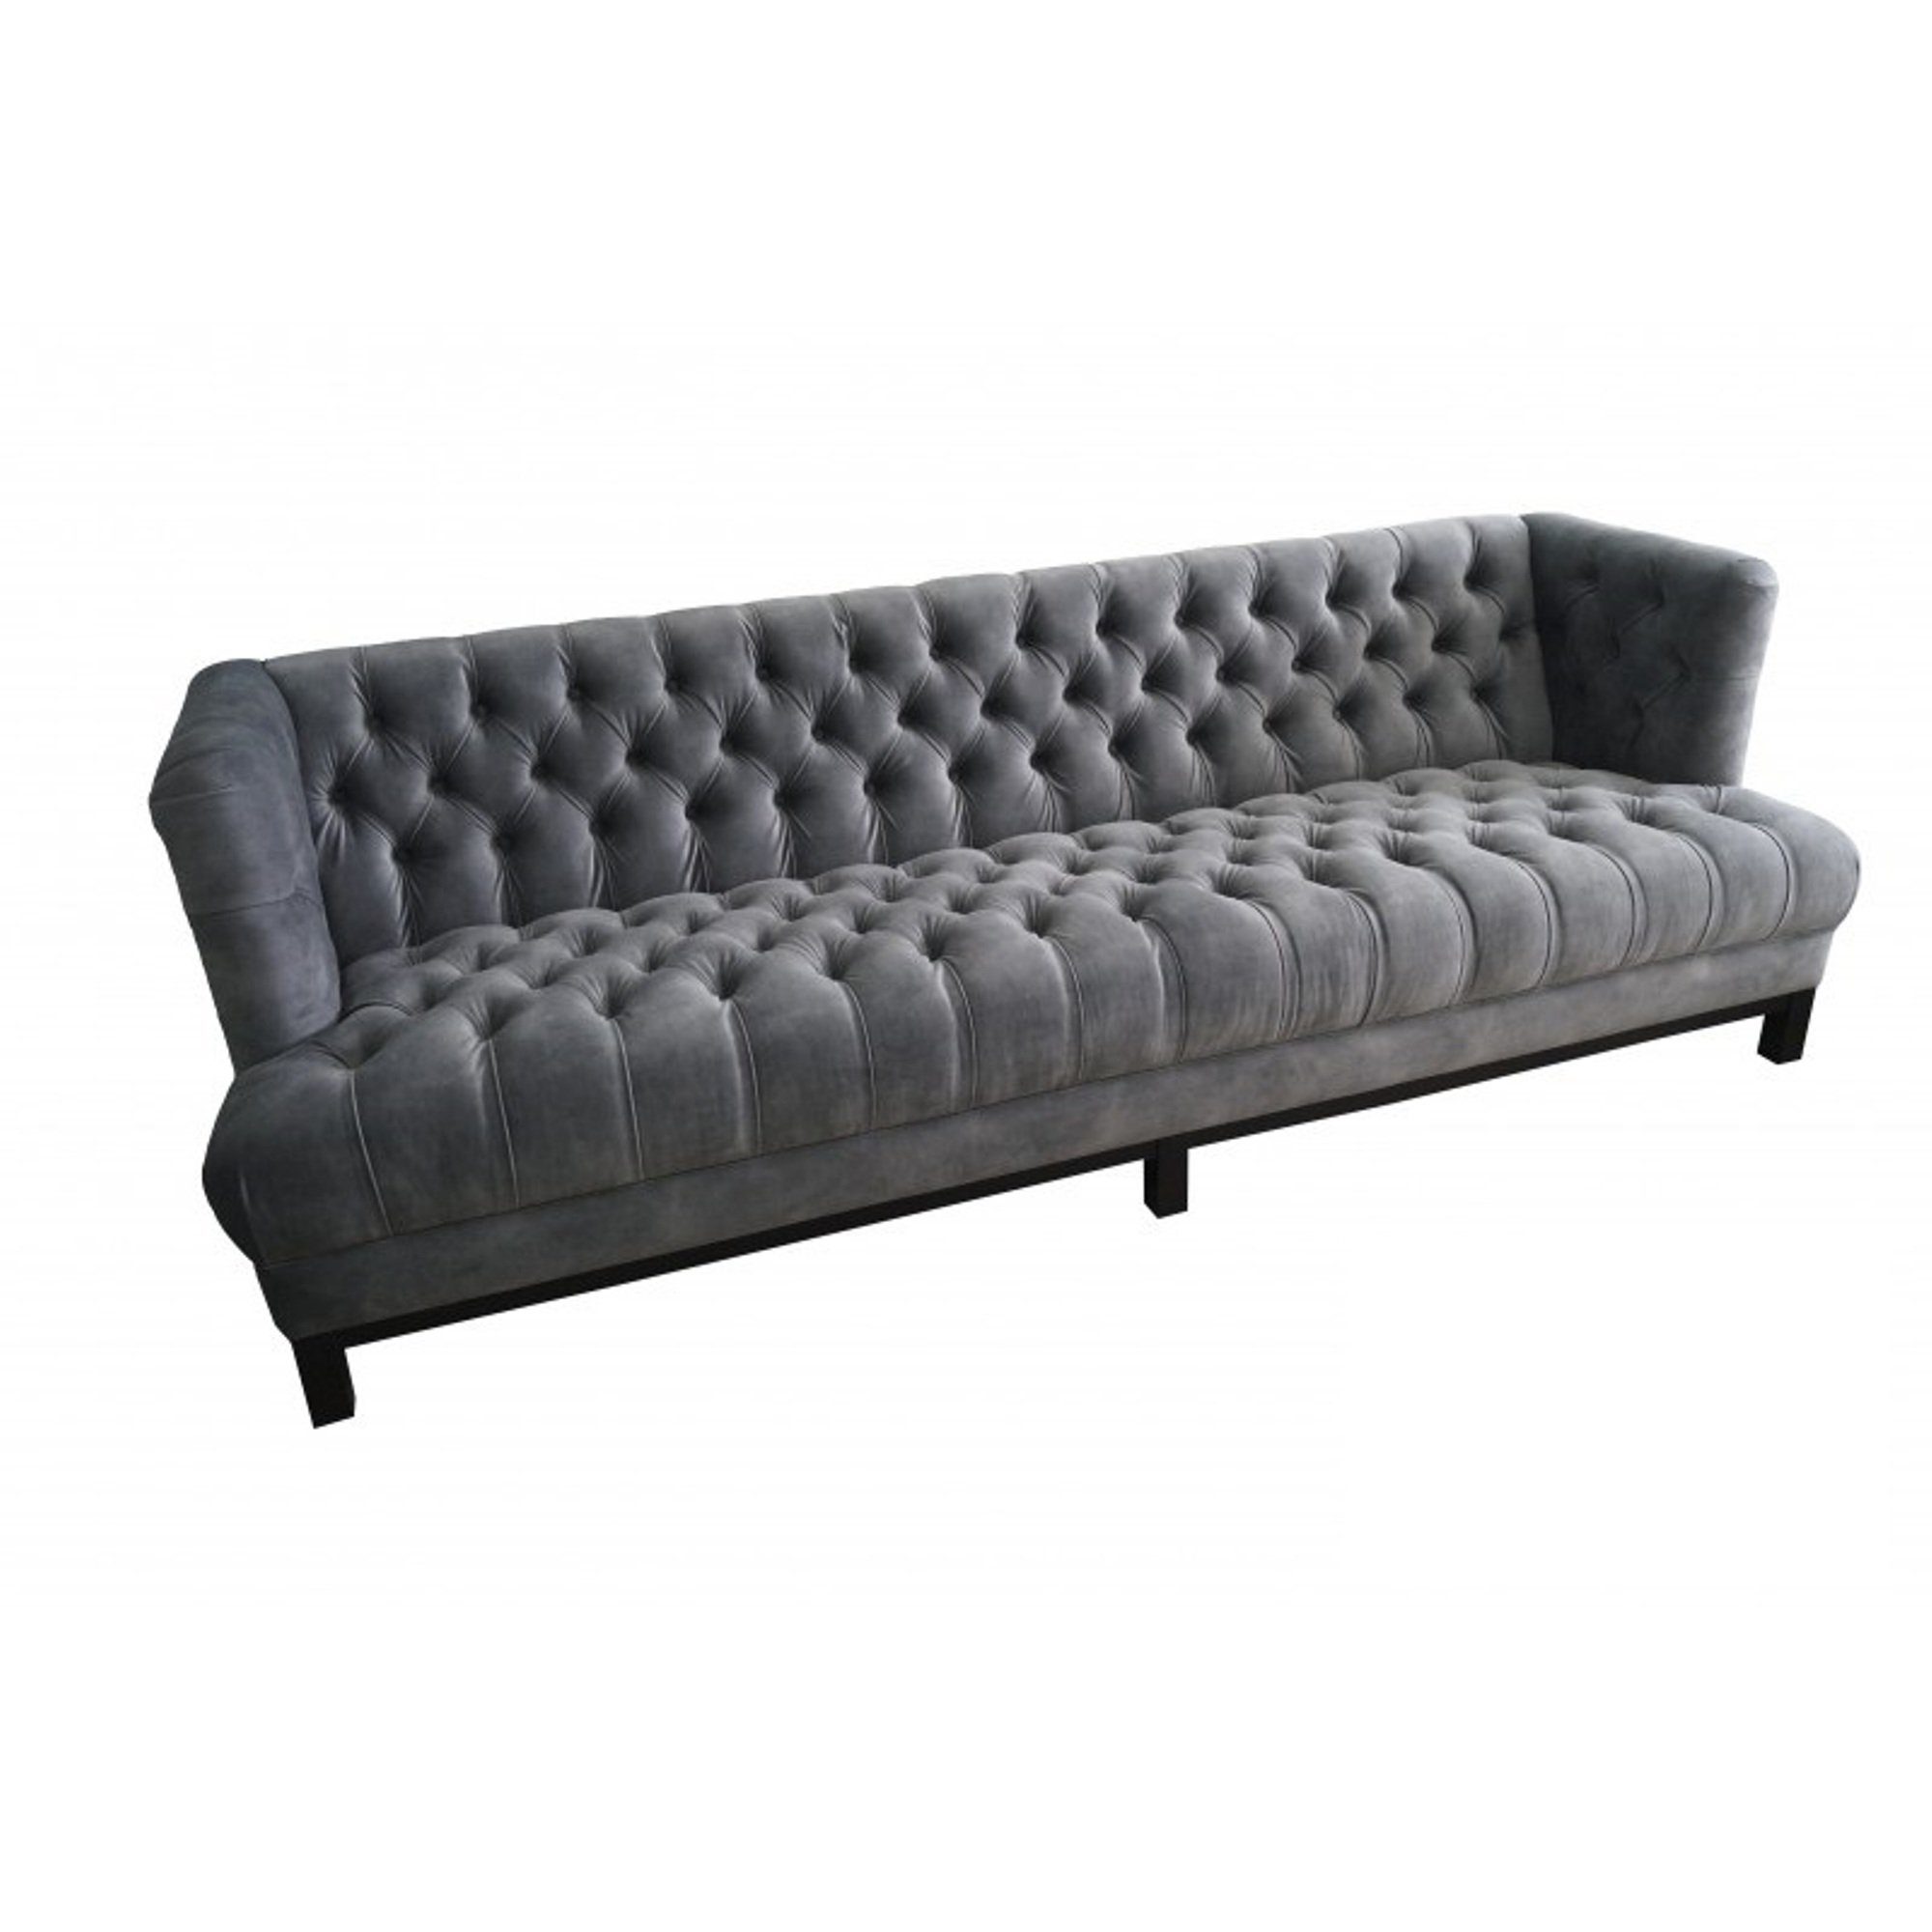 JVmoebel Sofa Moderner Luxus Chesterfield Dreisitzer Grau stilvoll Neu, Made in Europe